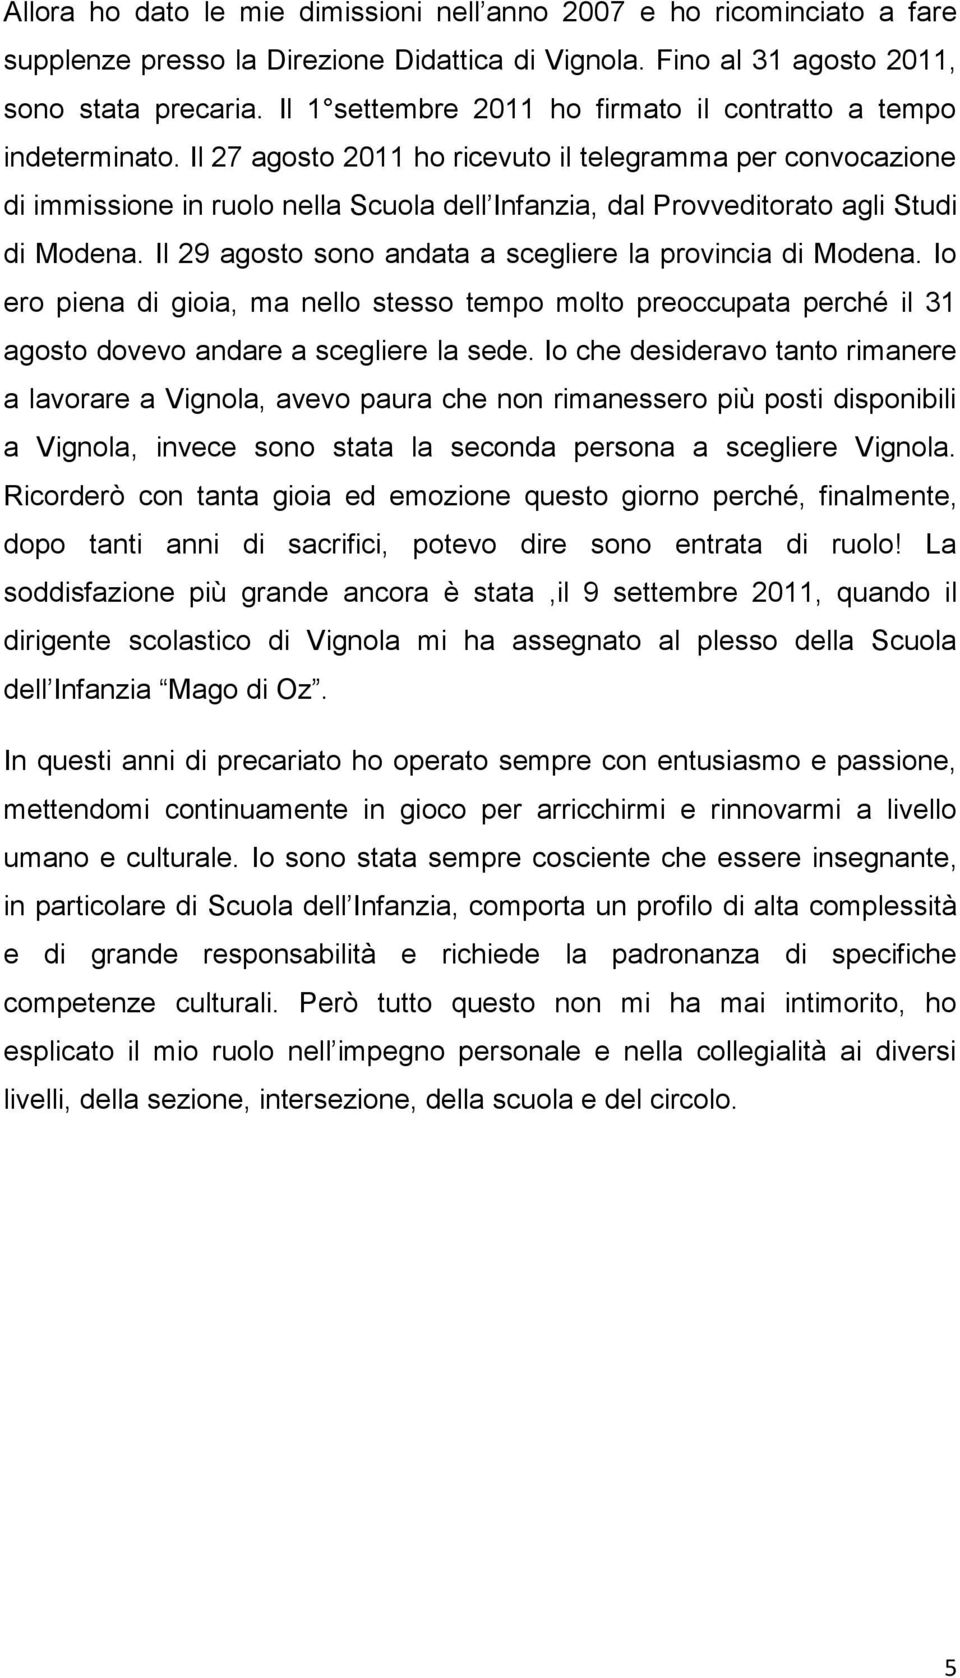 Il 27 agosto 2011 ho ricevuto il telegramma per convocazione di immissione in ruolo nella Scuola dell Infanzia, dal Provveditorato agli Studi di Modena.